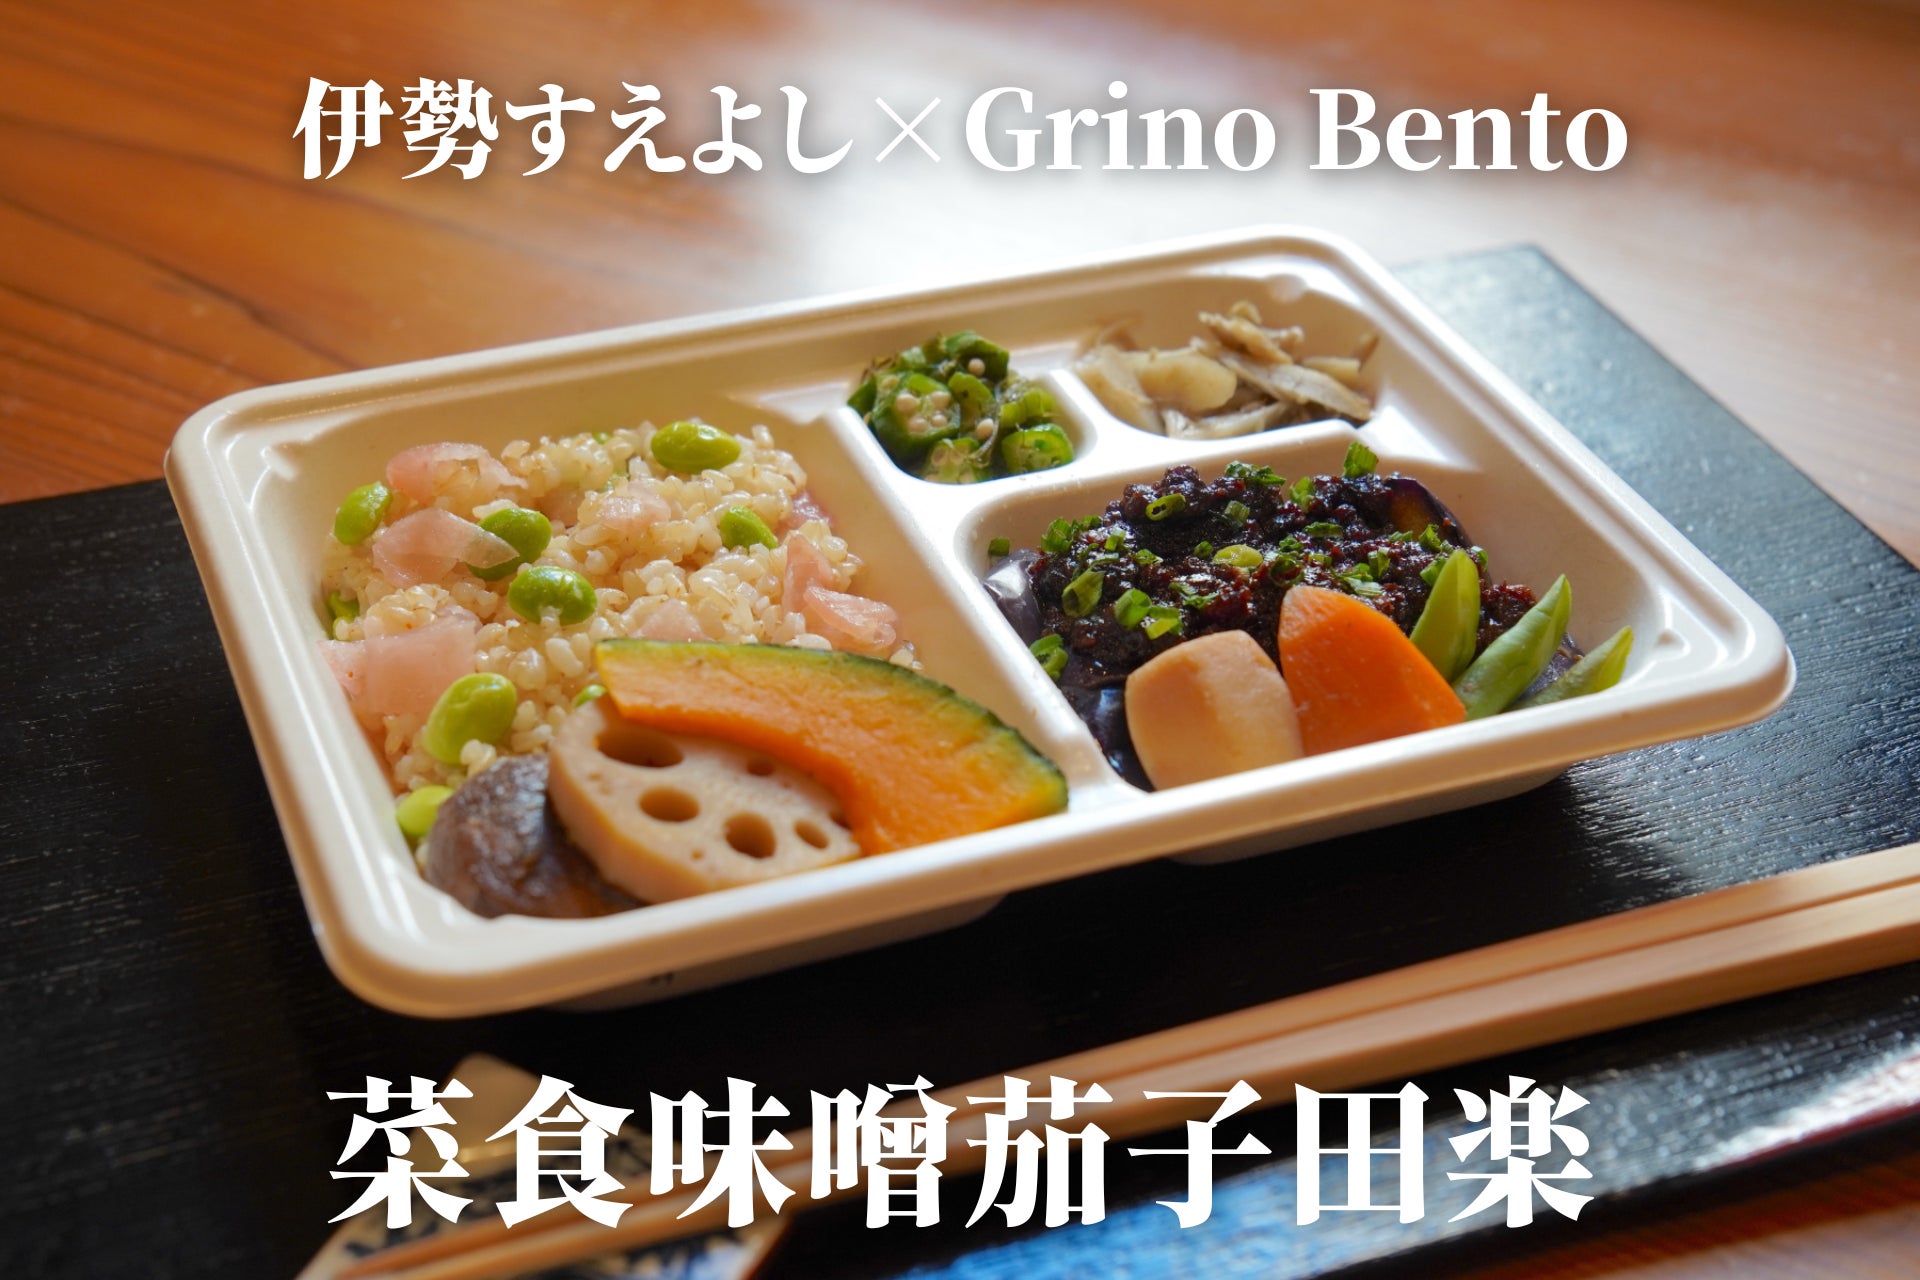 世界3位の割烹『伊勢すえよし』の“サステナブル板前”田中氏と共同開発した『Grino Bento』2種を2月21日(火)に一般販売開始のサブ画像4